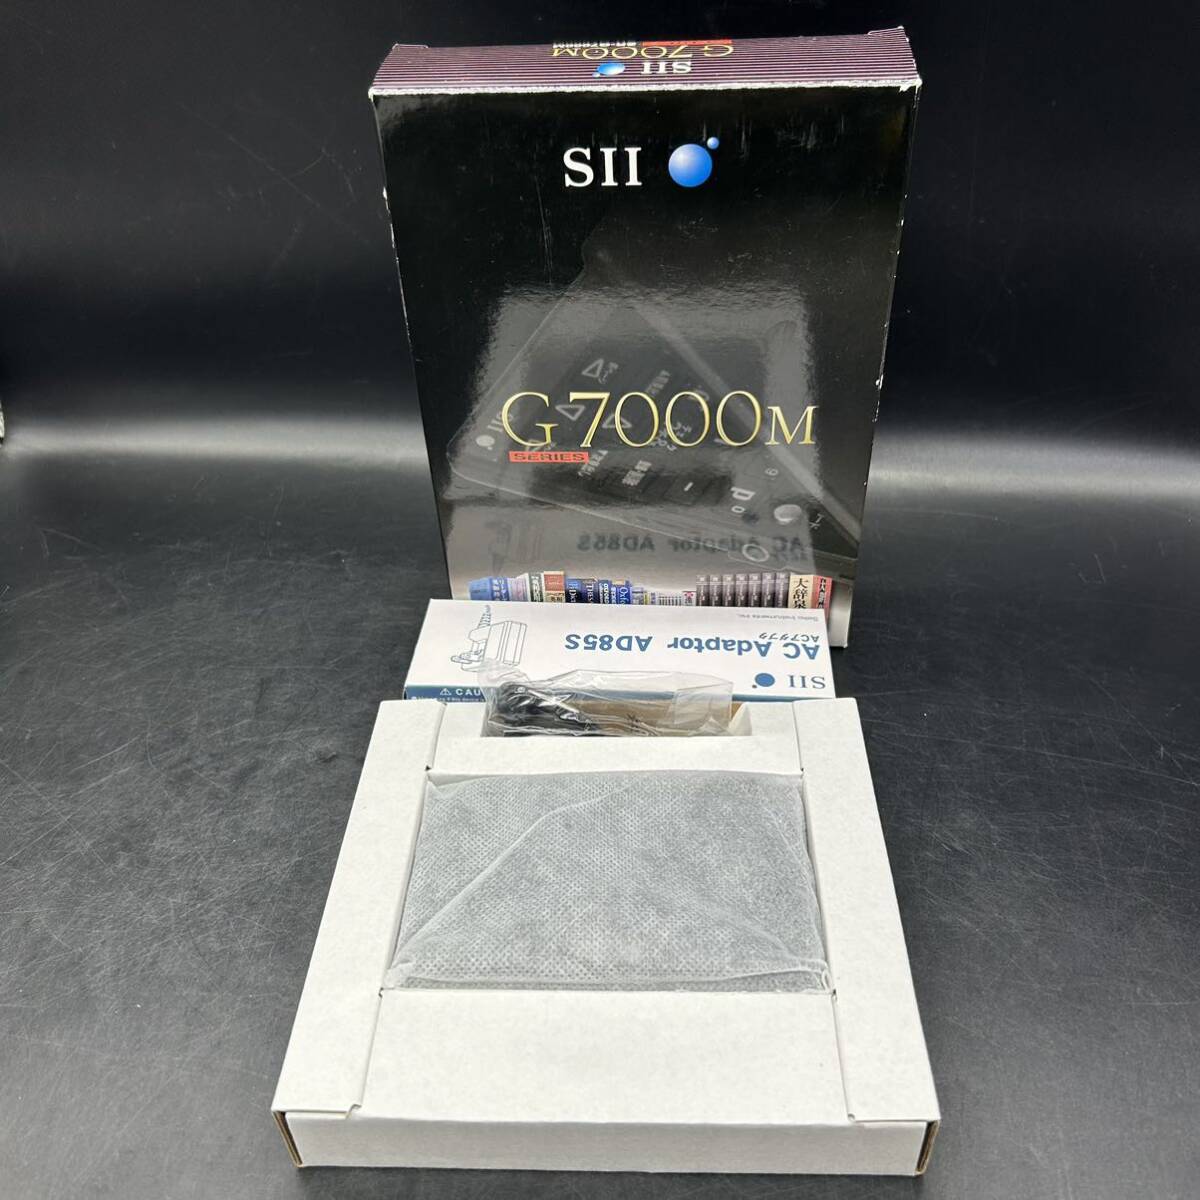 Seiko Seiko SII электронный словарь бизнес модель SR-G7000M компактная модель рабочее состояние подтверждено X3